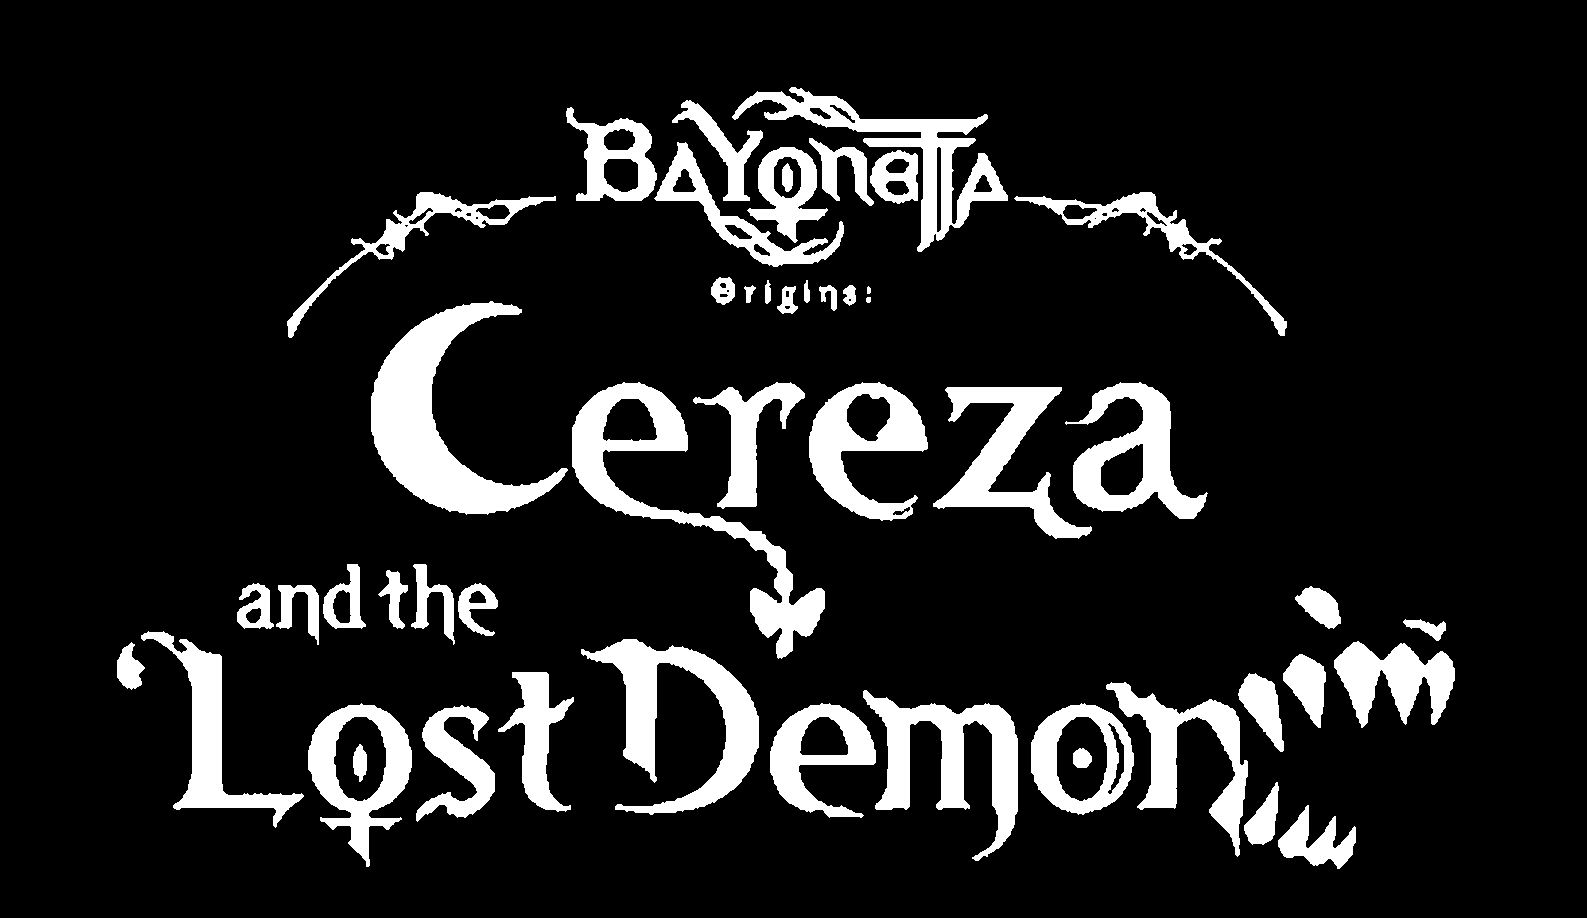  BAYONETTA ORIGINS: CEREZA AND THE LOST DEMON